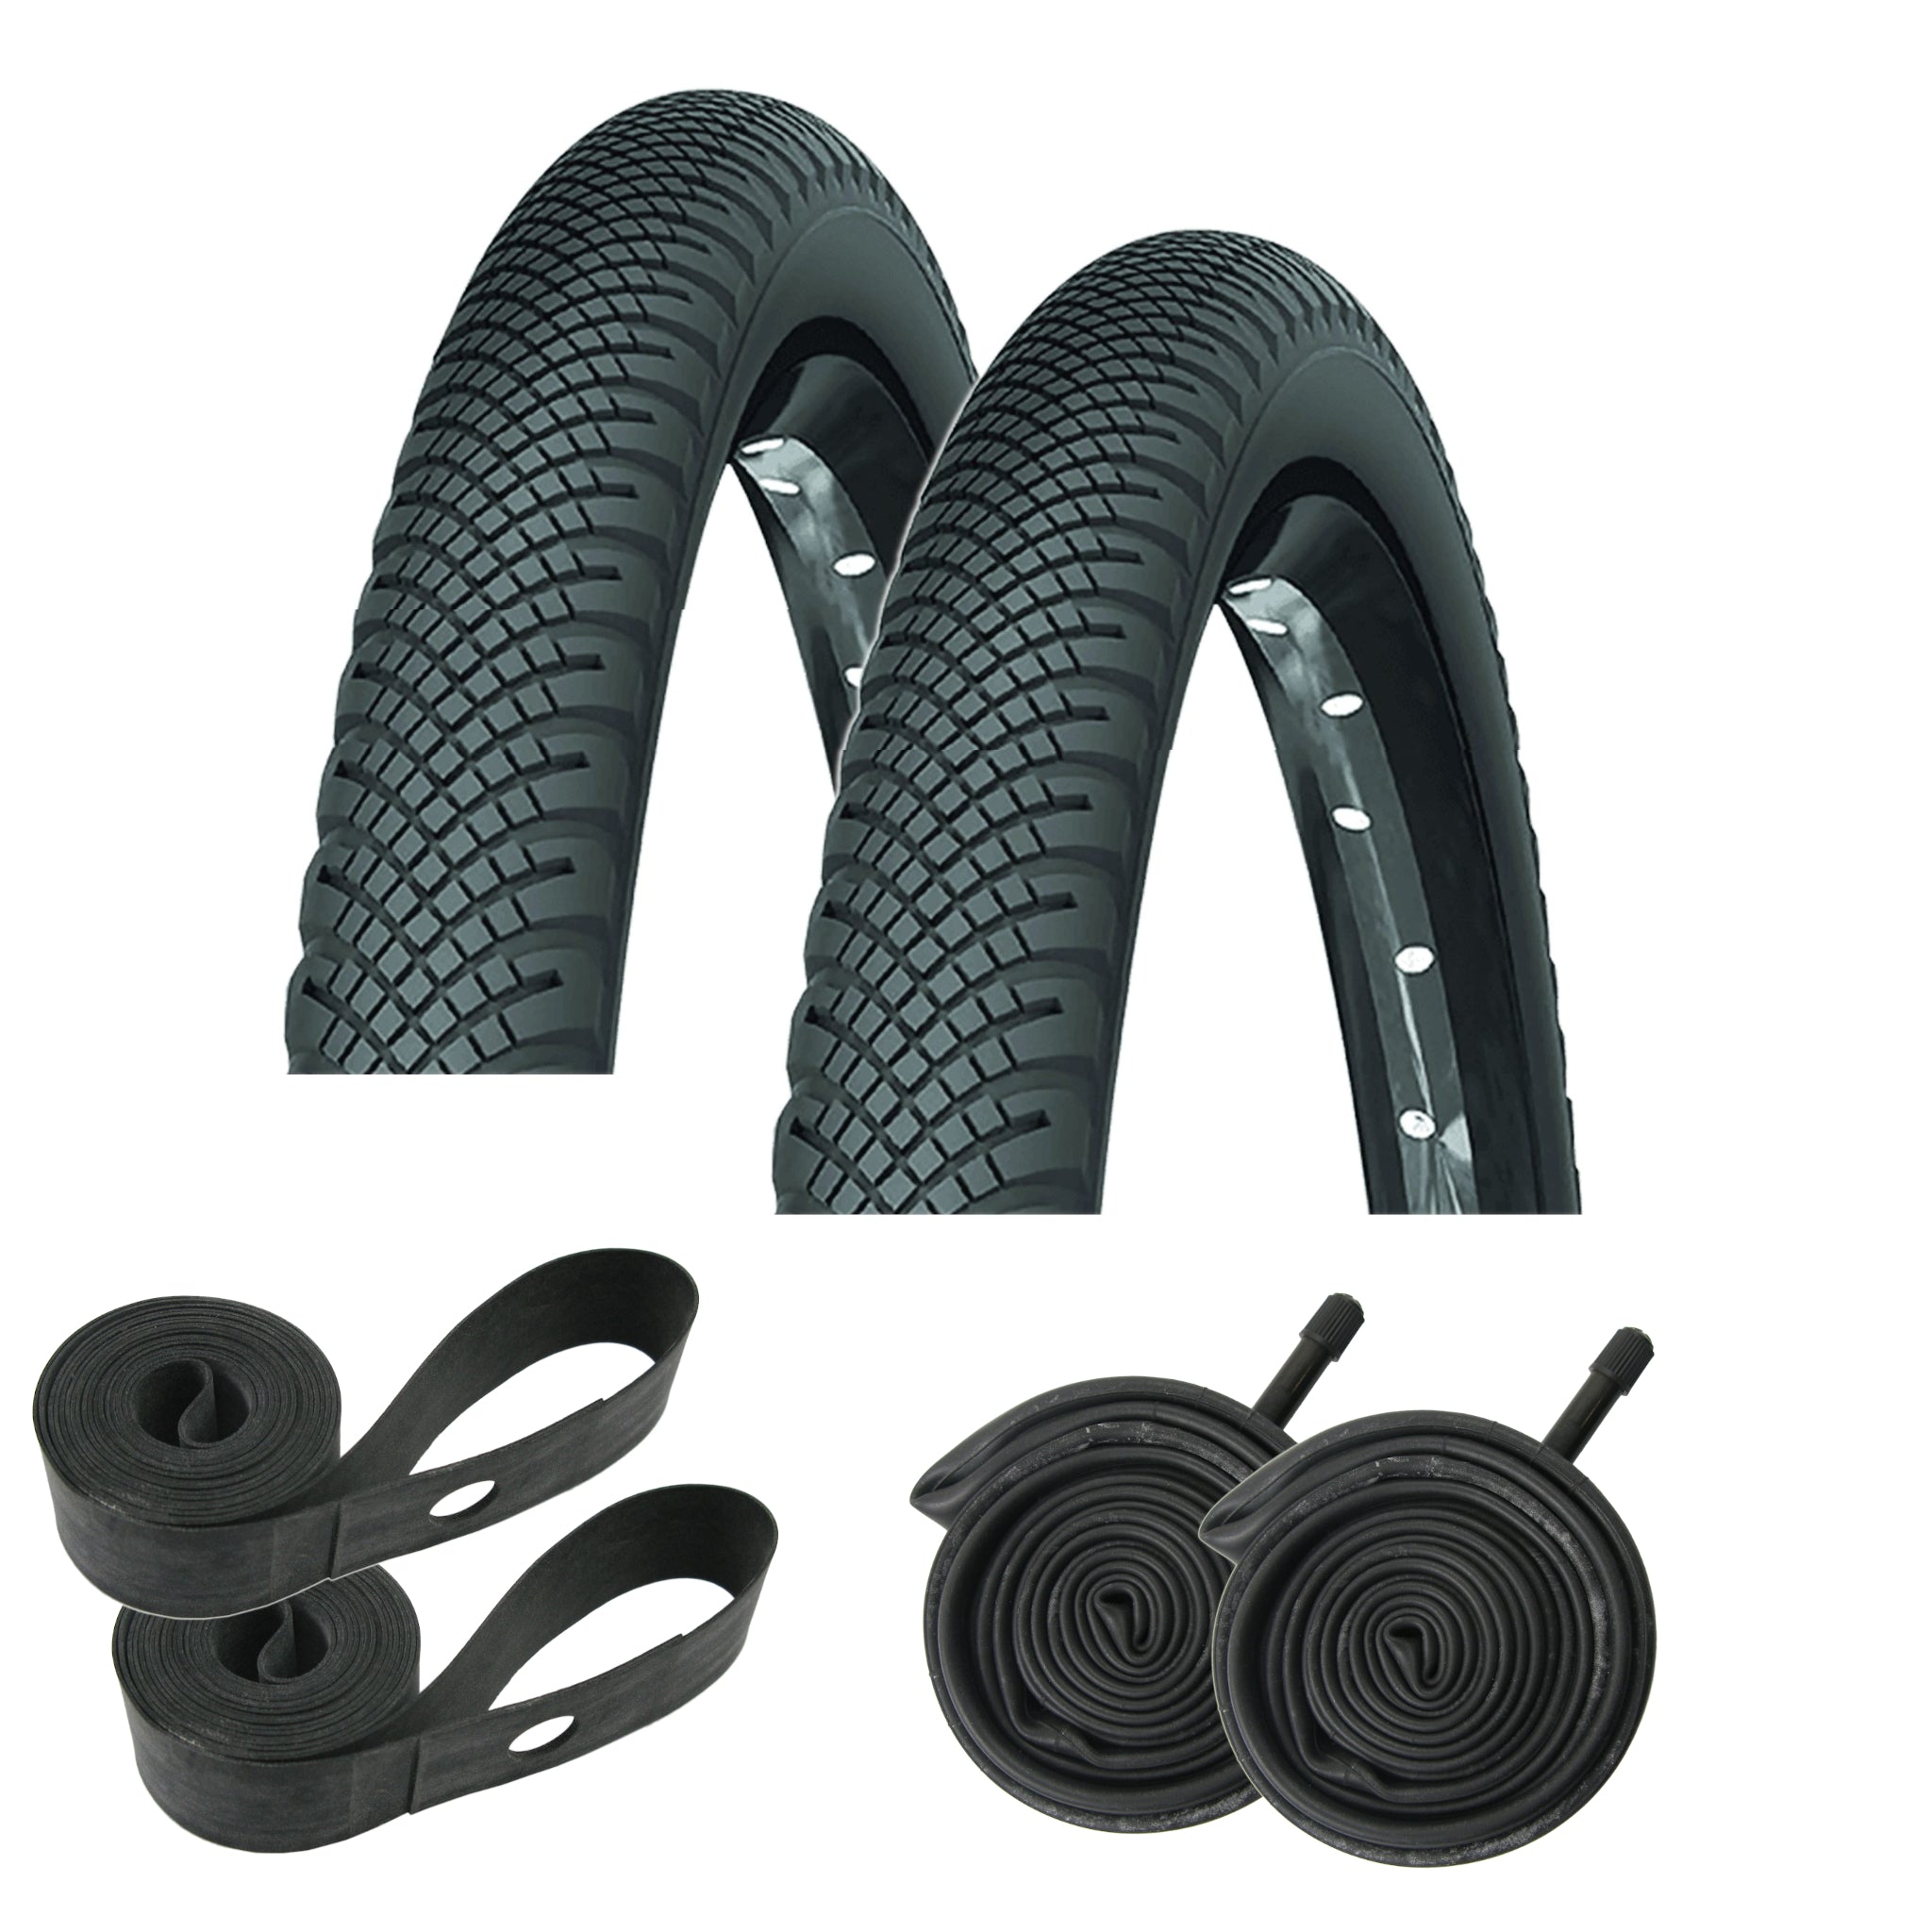 Michelin Country Rock 26x1.75 Schrader Valve Tire Kit - The Bikesmiths